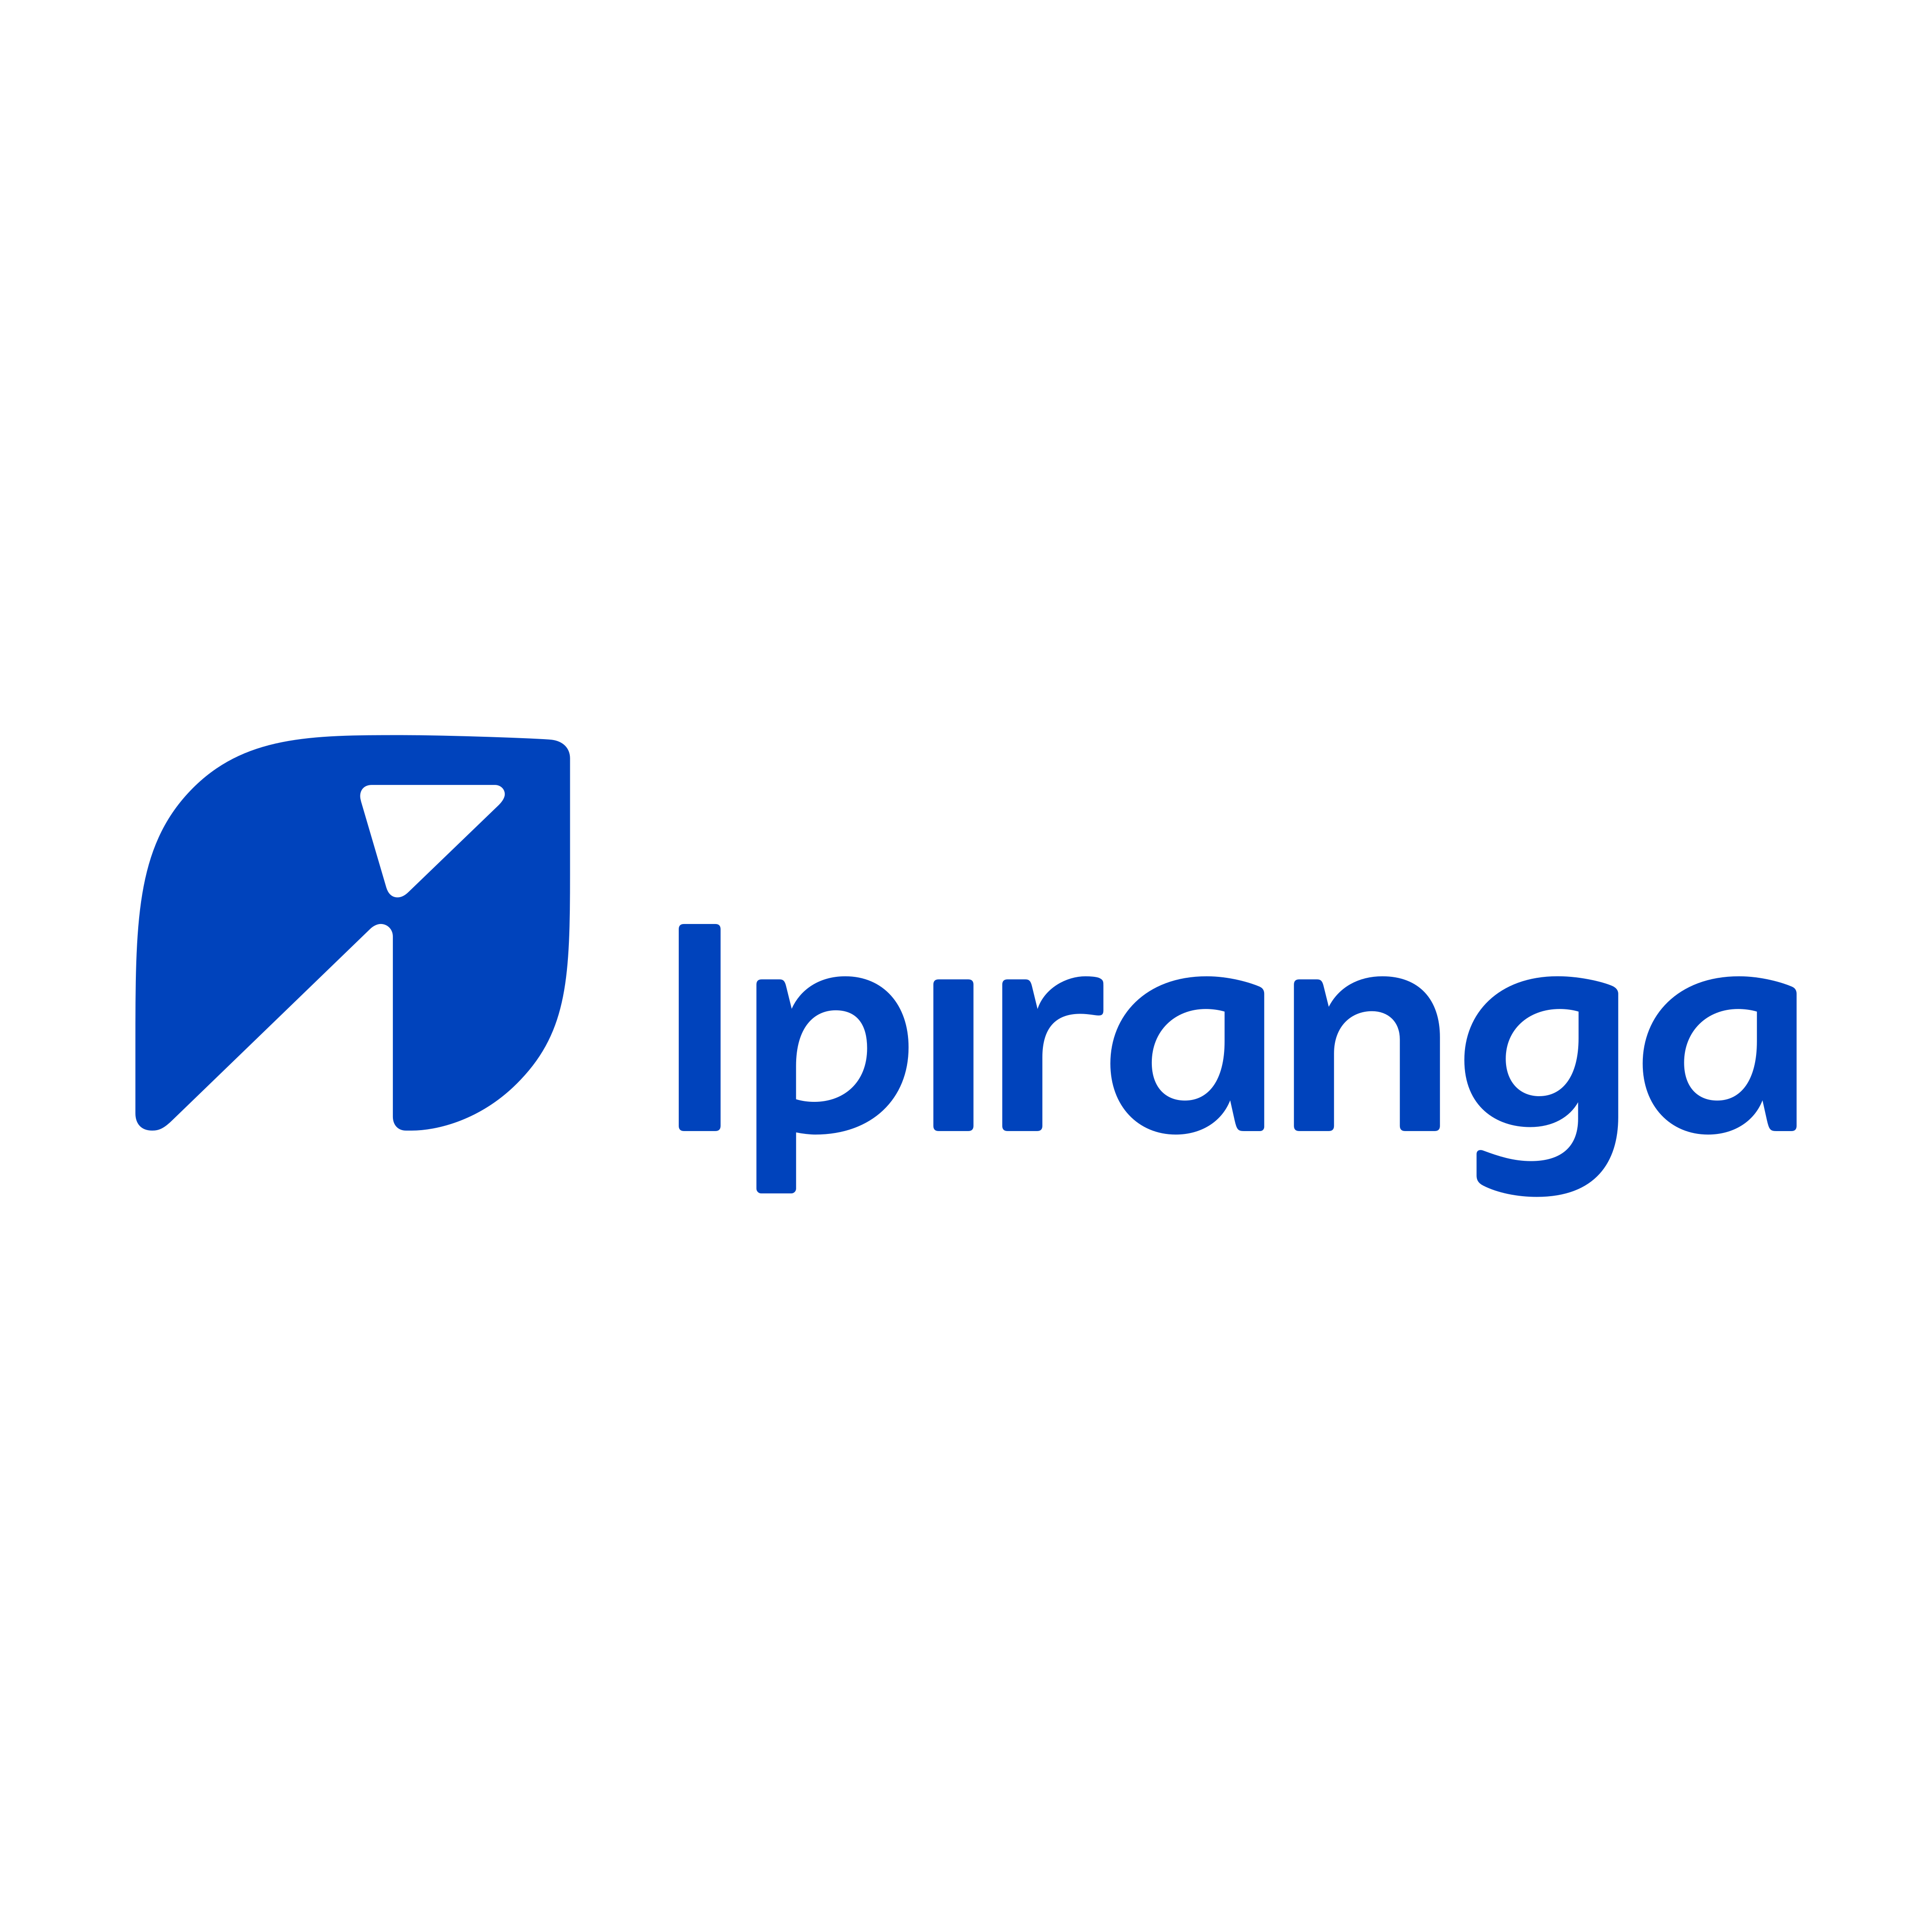 Ipiranga Logo PNG.